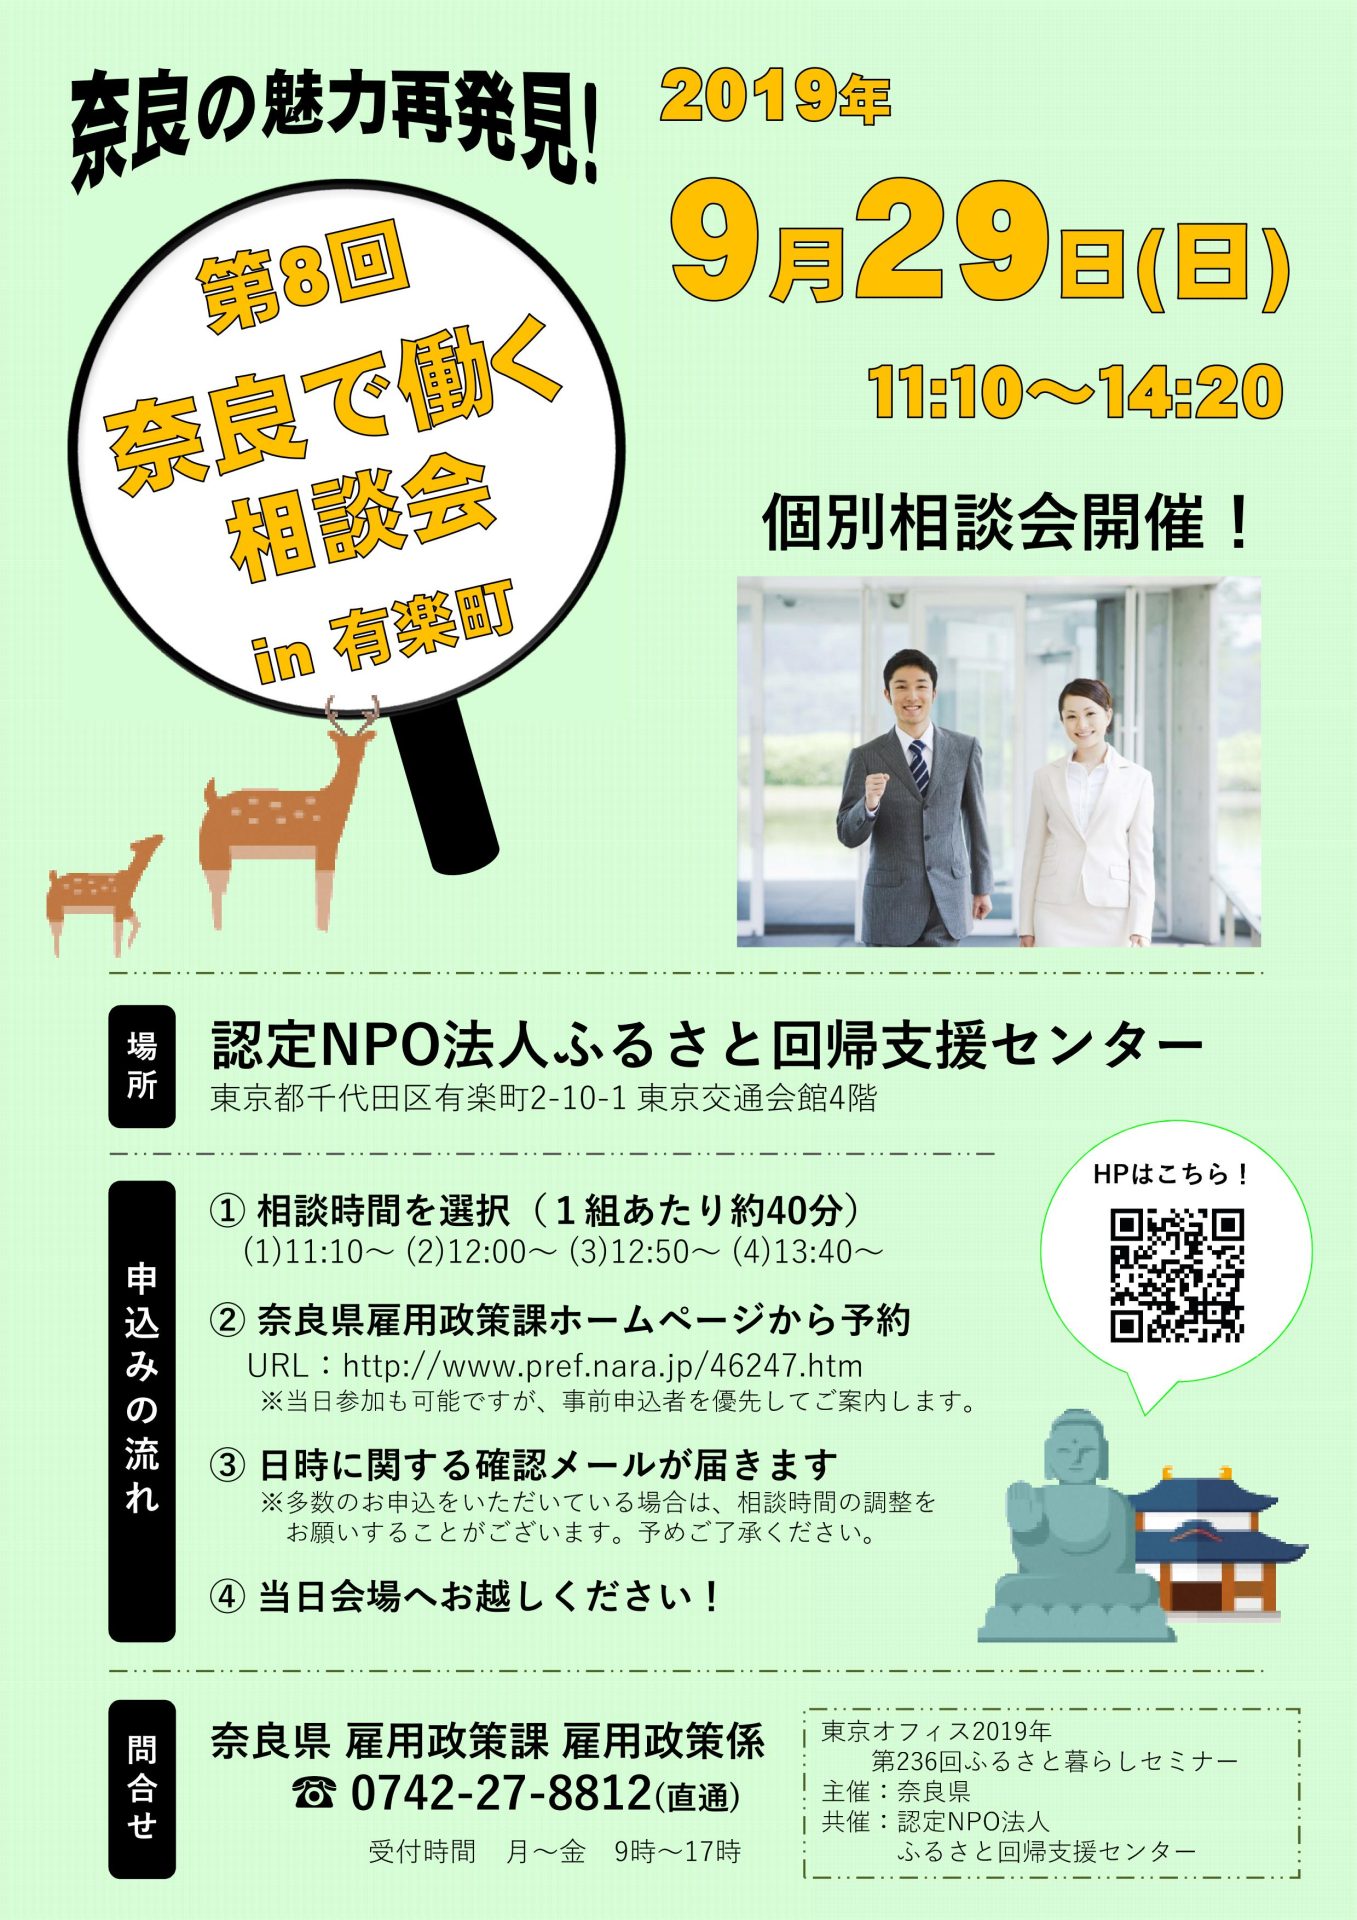 【満員御礼】第8回奈良で働く相談会 in 有楽町 | 移住関連イベント情報